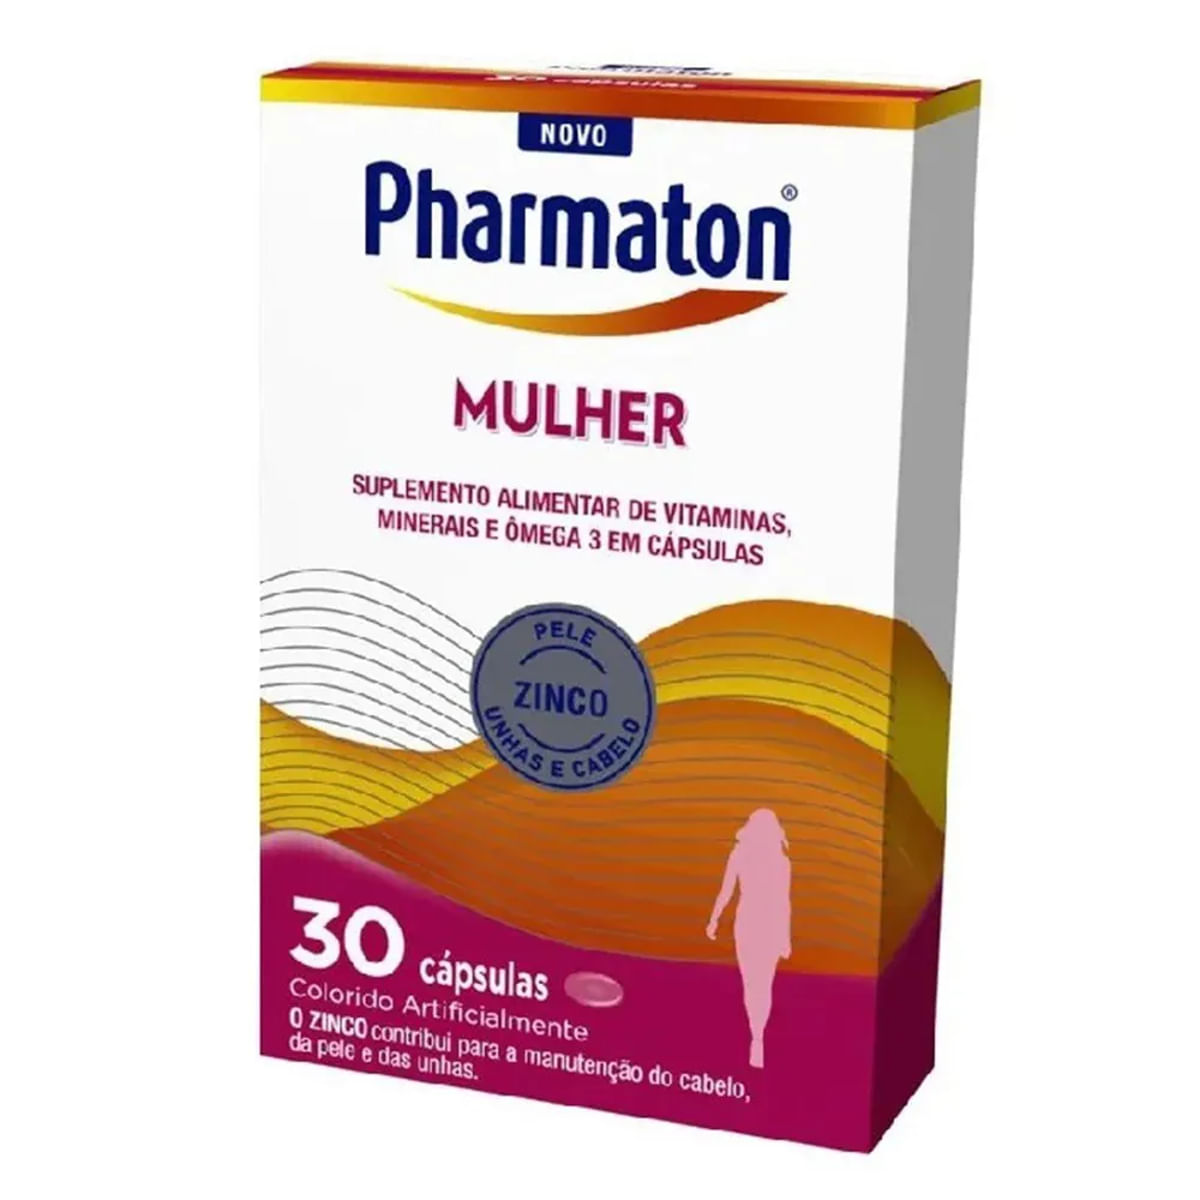 pharmaton-mulher-30-capsulas-1.jpg